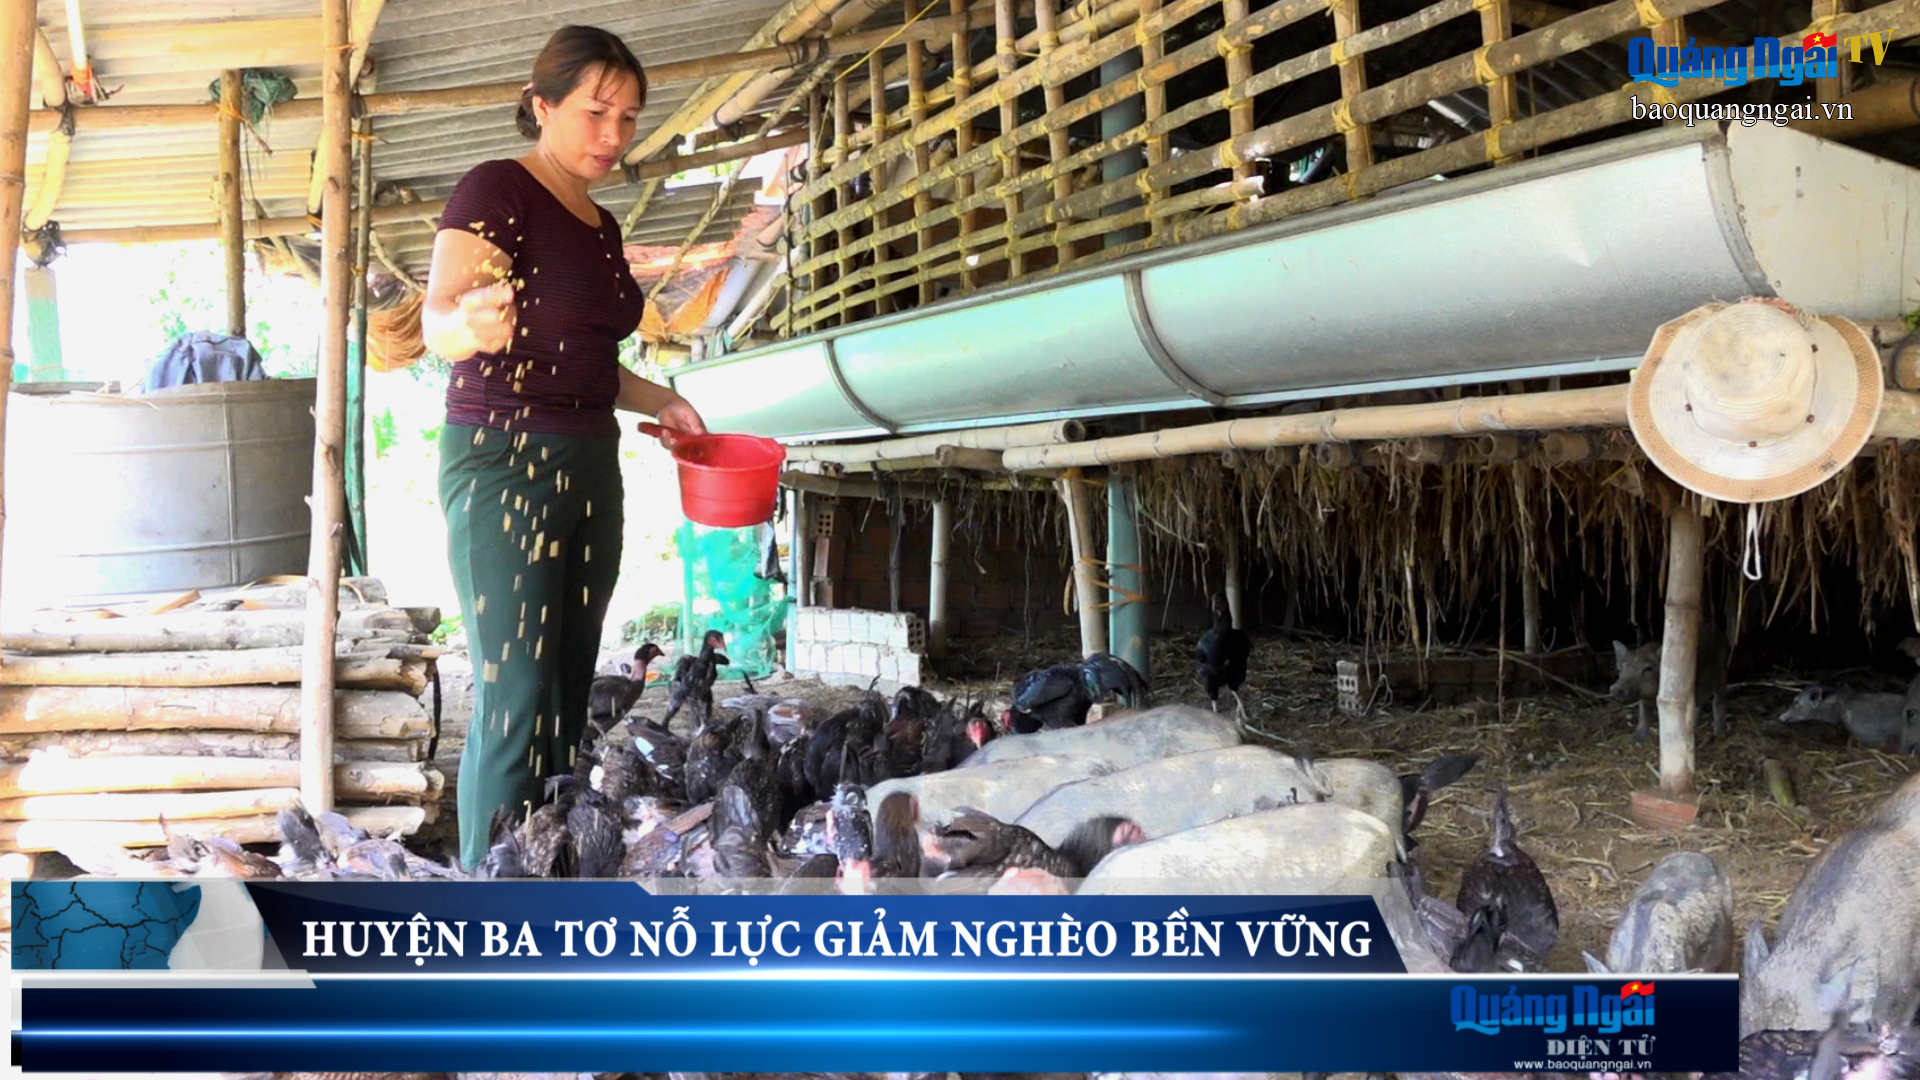 Video: Huyện Ba Tơ nỗ lực giảm nghèo bền vững